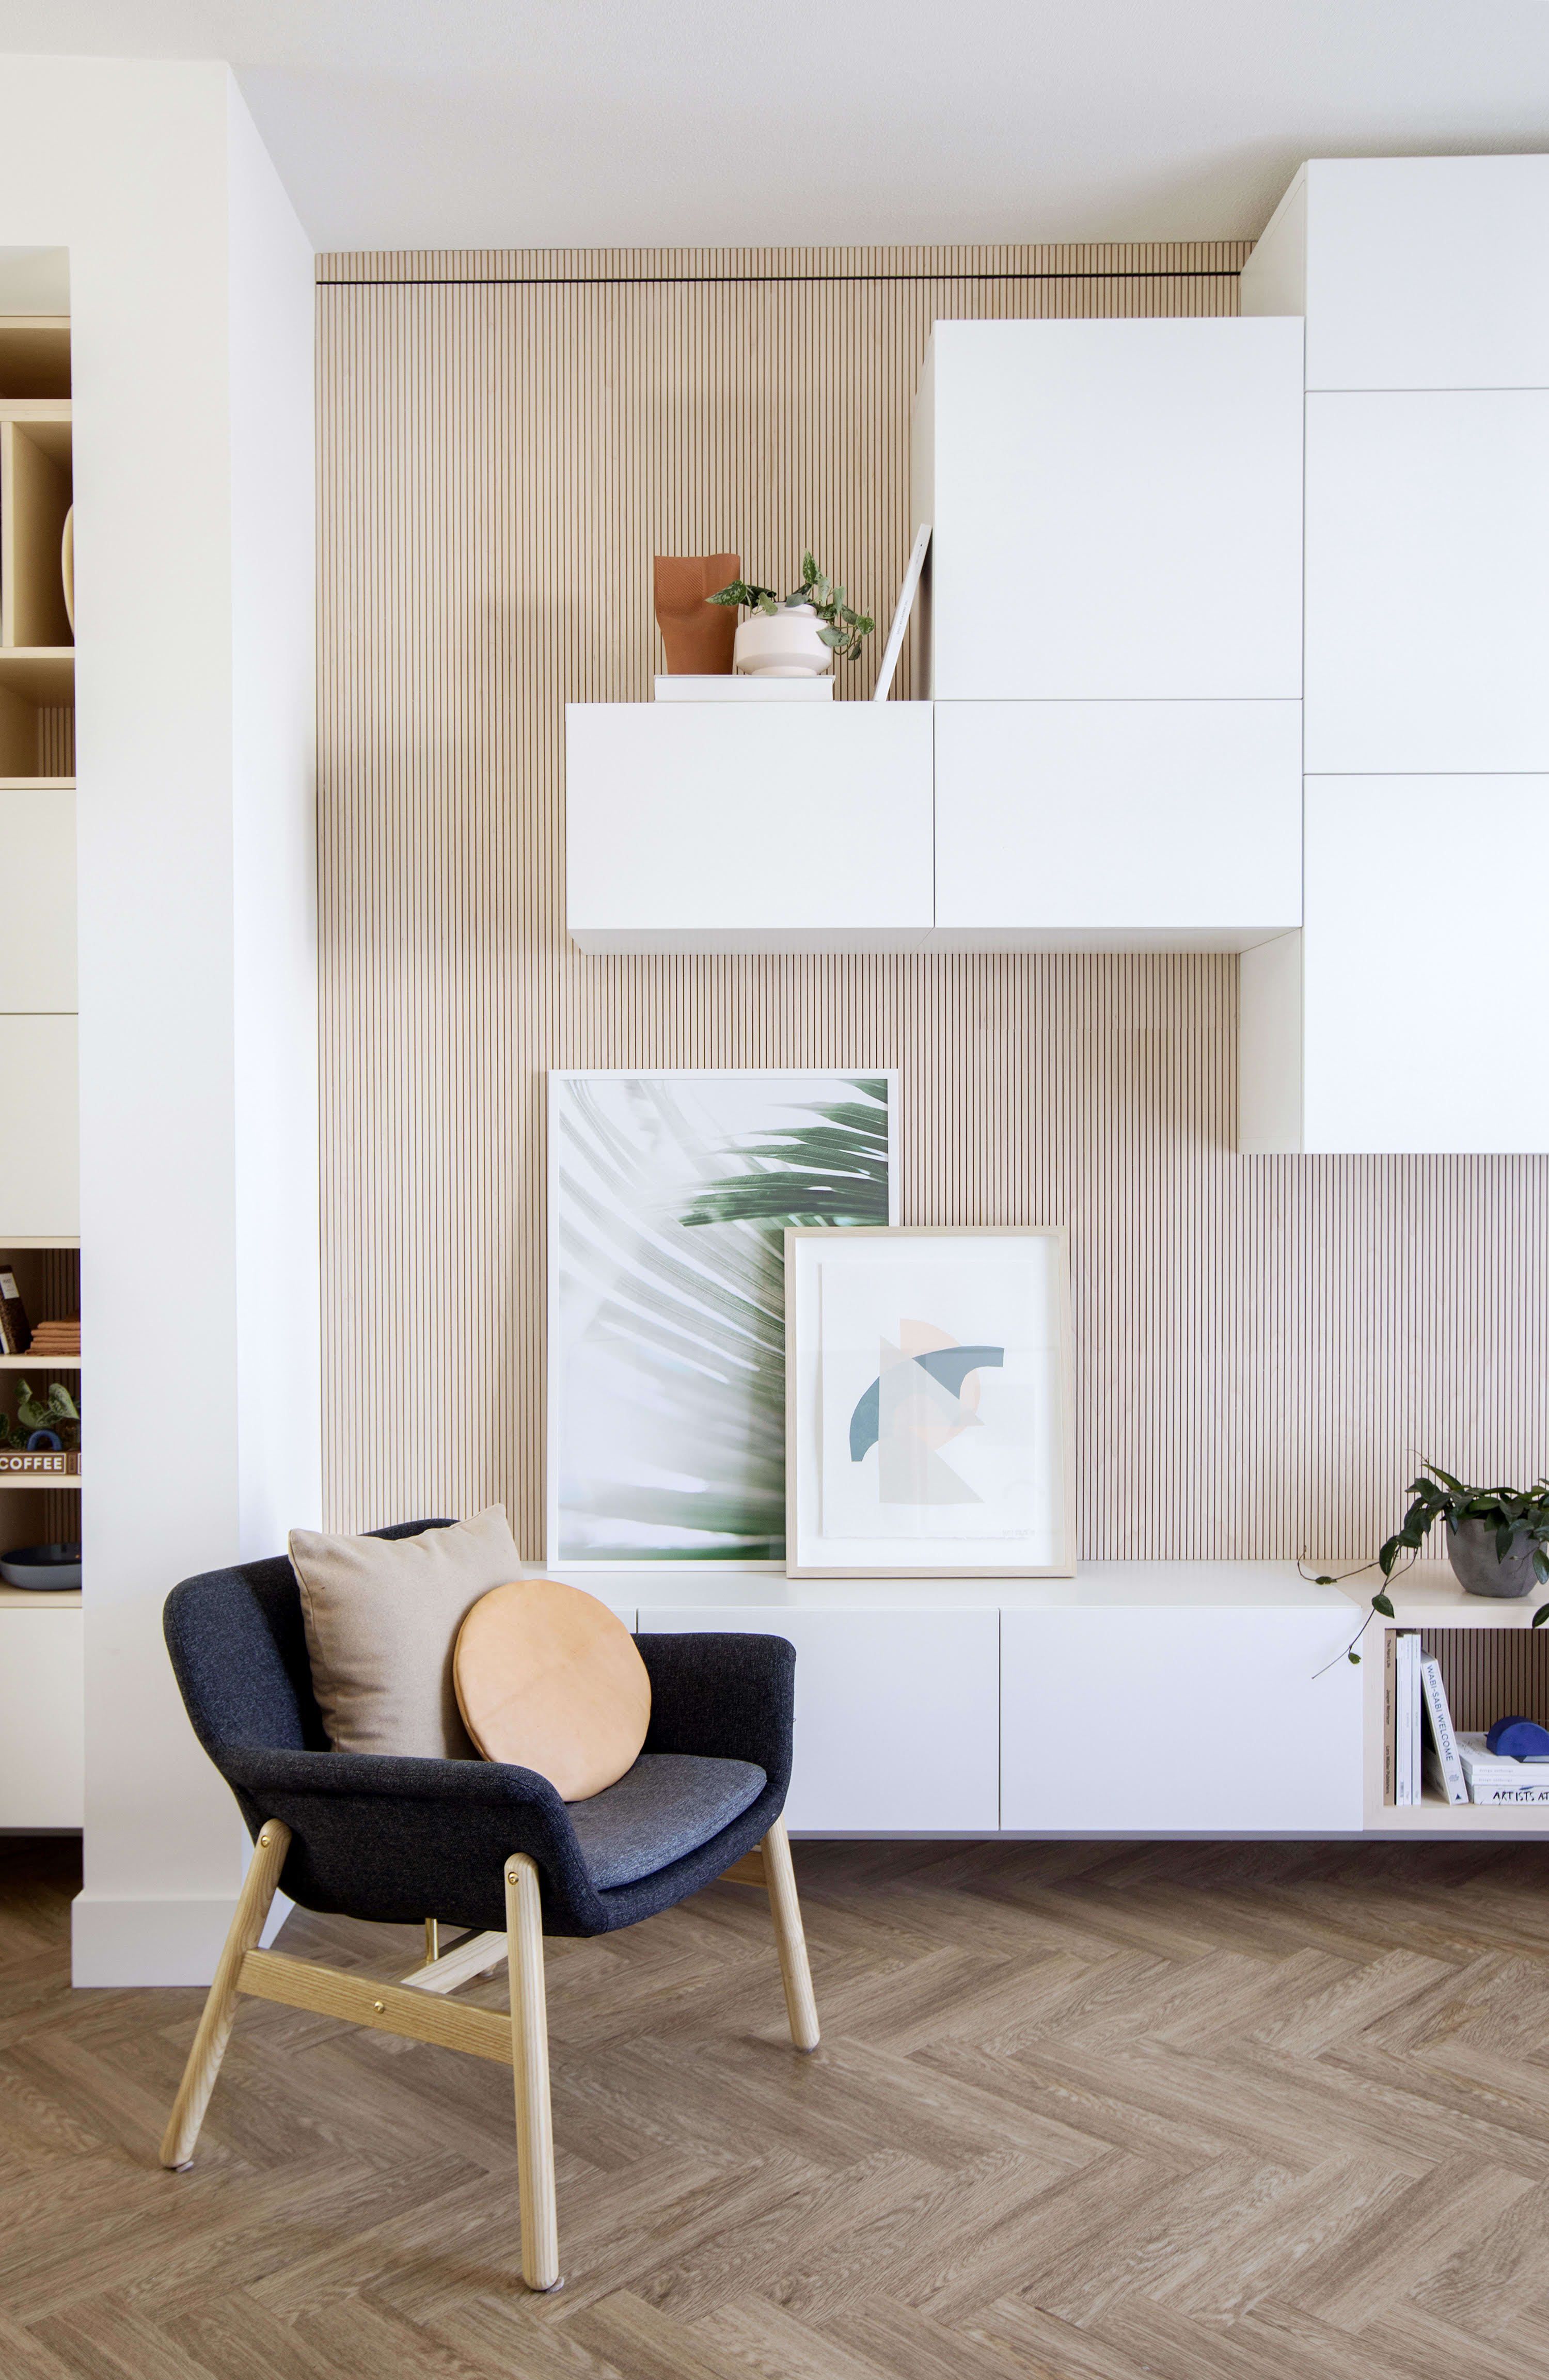 16 room decor Ikea furniture ideas